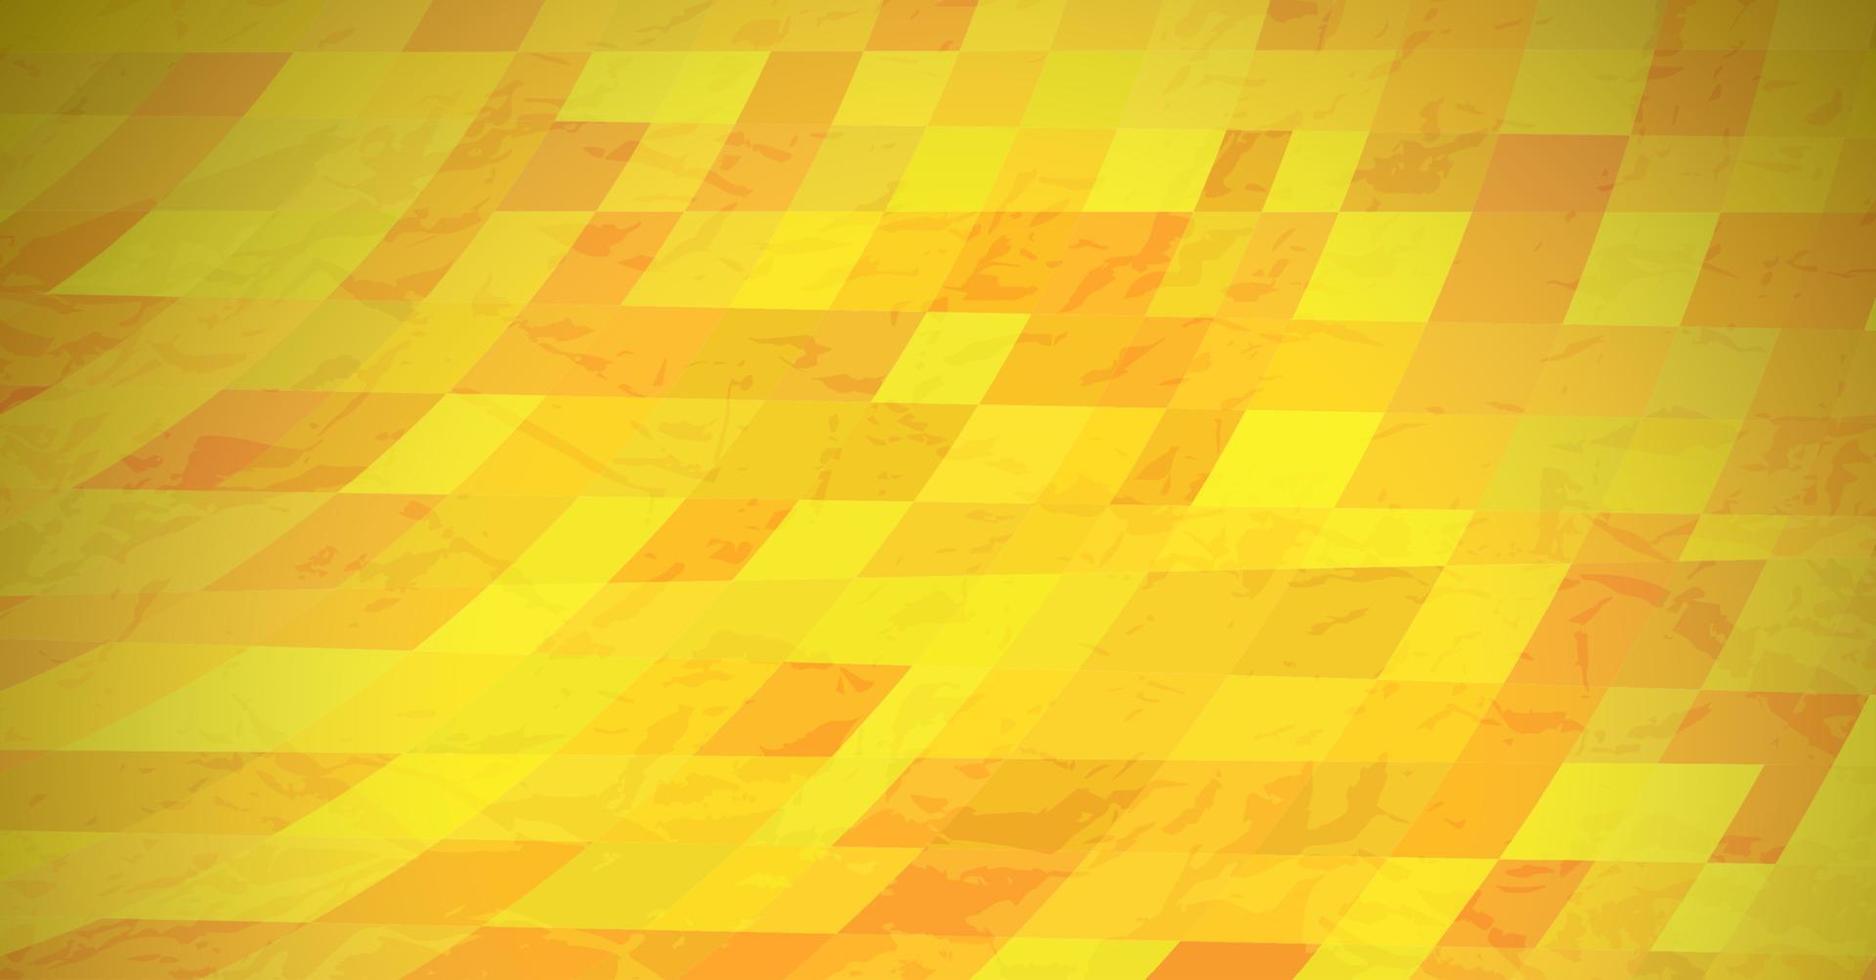 abstrakter strukturierter Hintergrund mit gelben bunten Rechtecken. Banner-Design. schönes futuristisches dynamisches geometrisches Musterdesign. Vektor-Illustration vektor